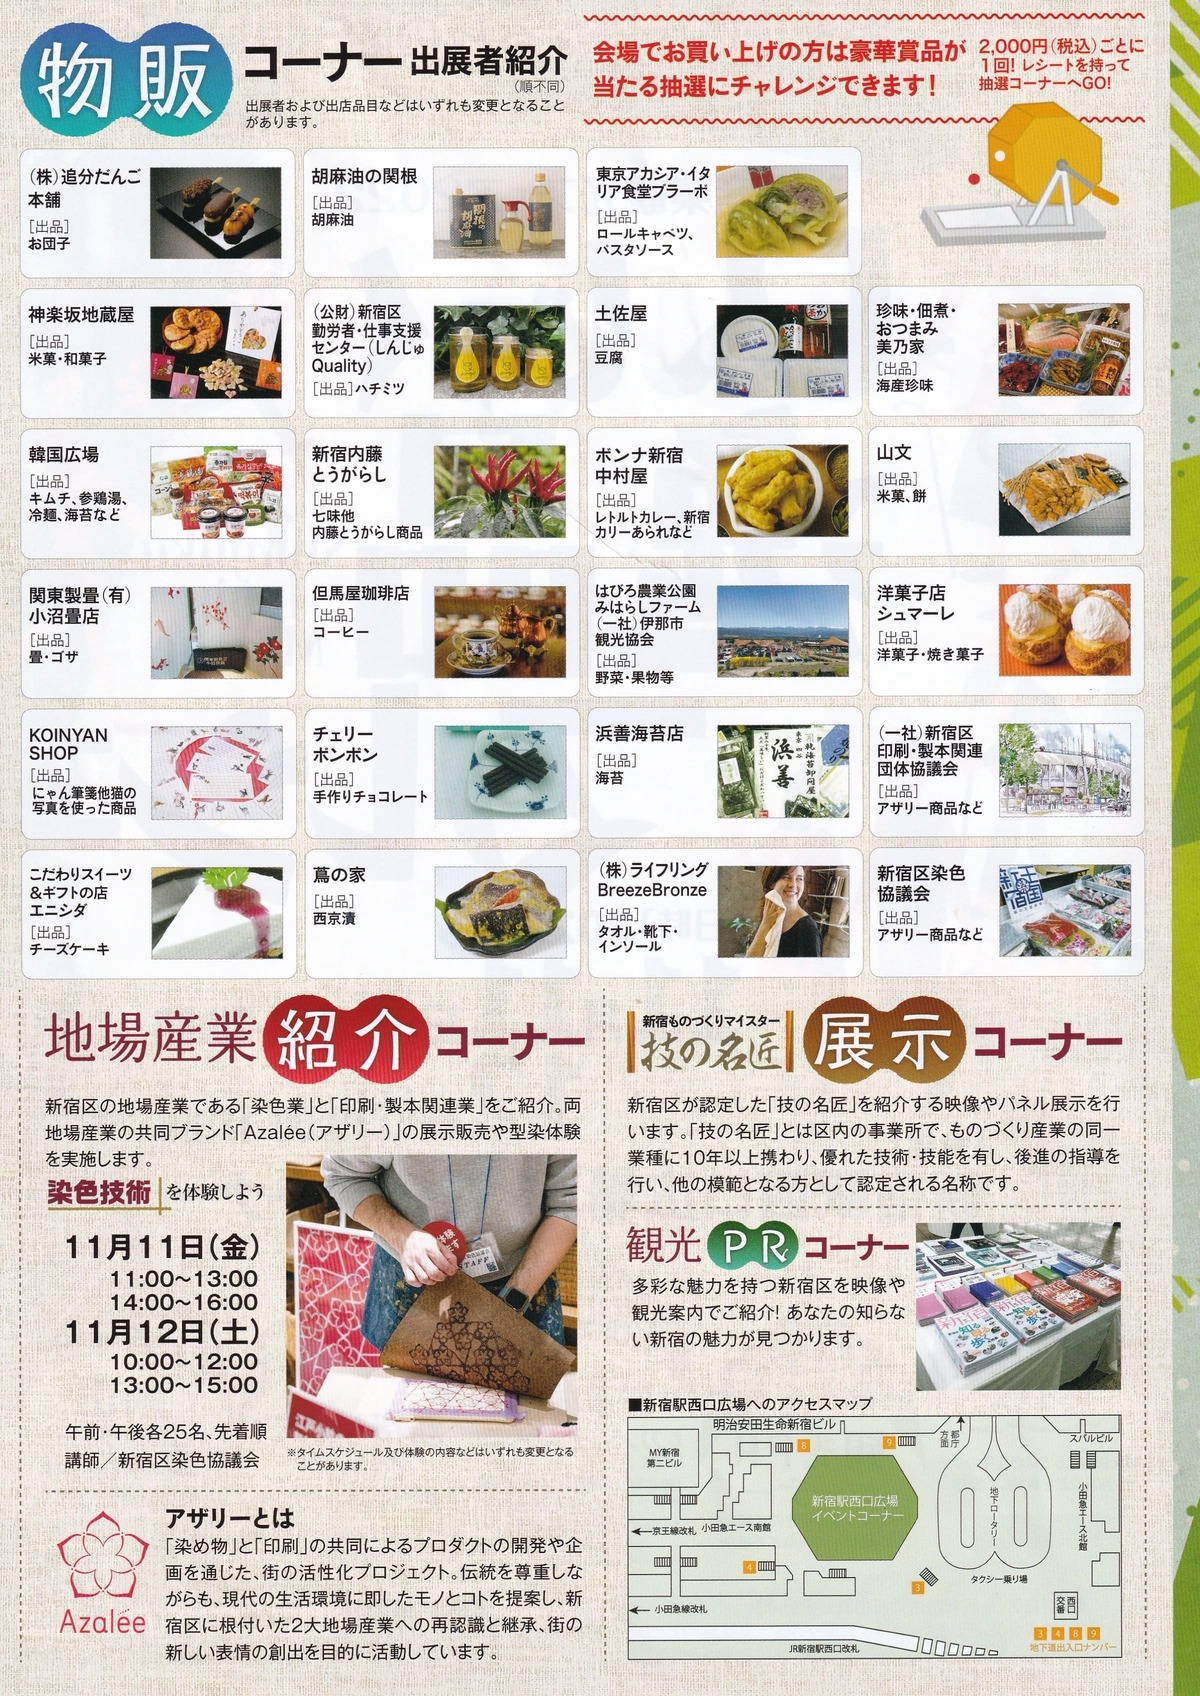 新宿産業観光フェア2022「しんじゅく逸品マルシェ」のパンフレット